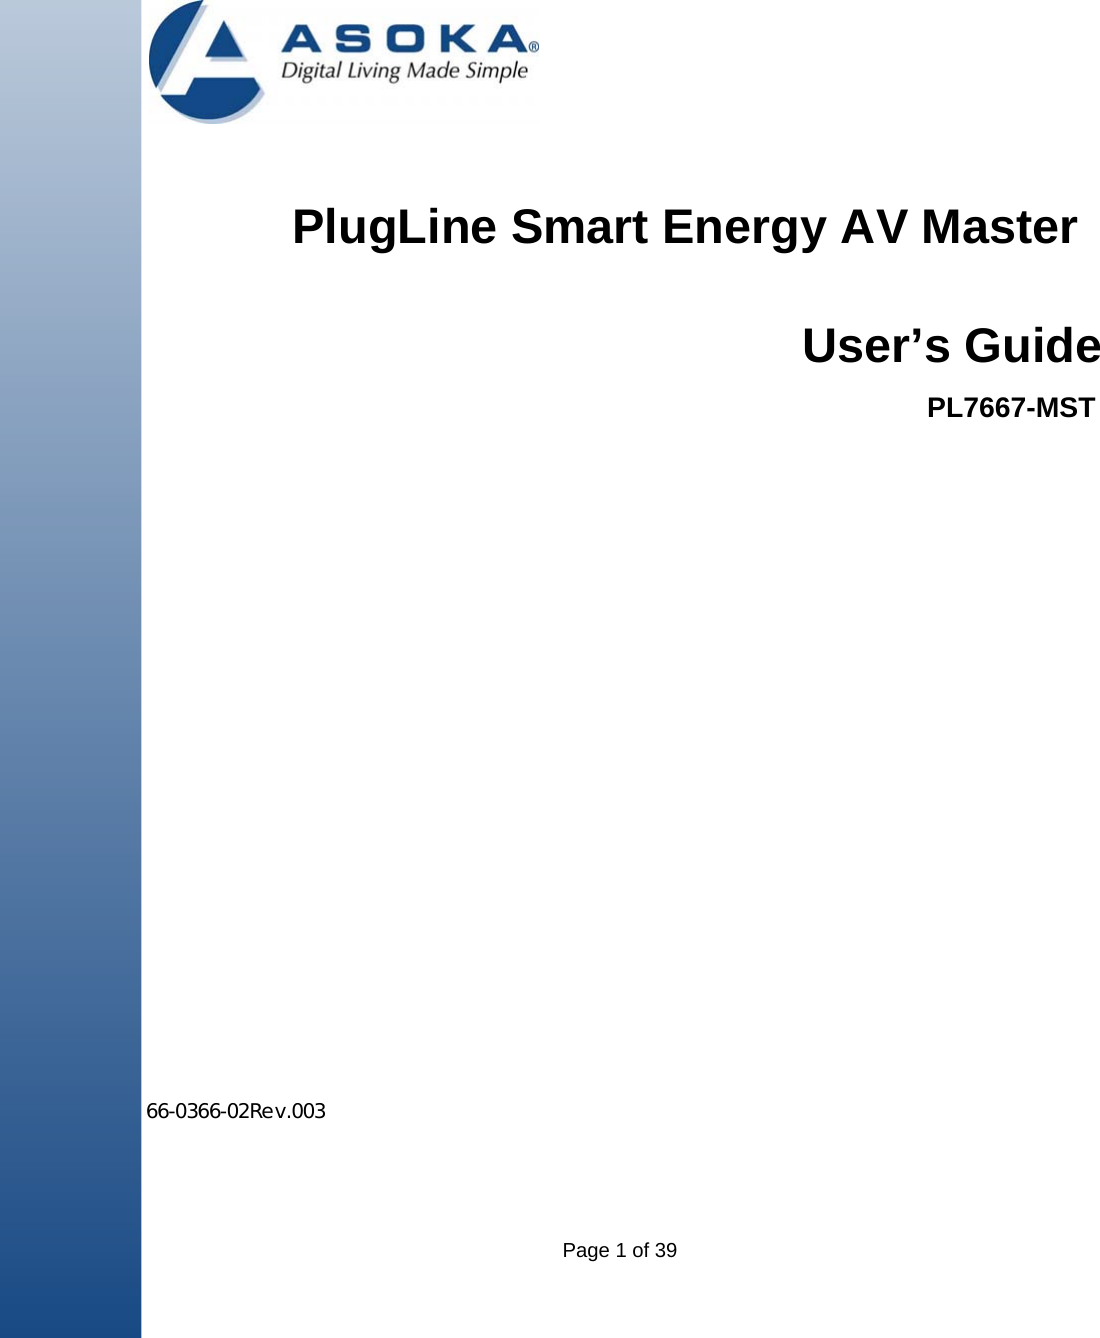 Page 1 of 39            PlugLine Smart Energy AV Master                                                                                                                   66-0366-02Rev.003                        User’s GuidePL7667-MST